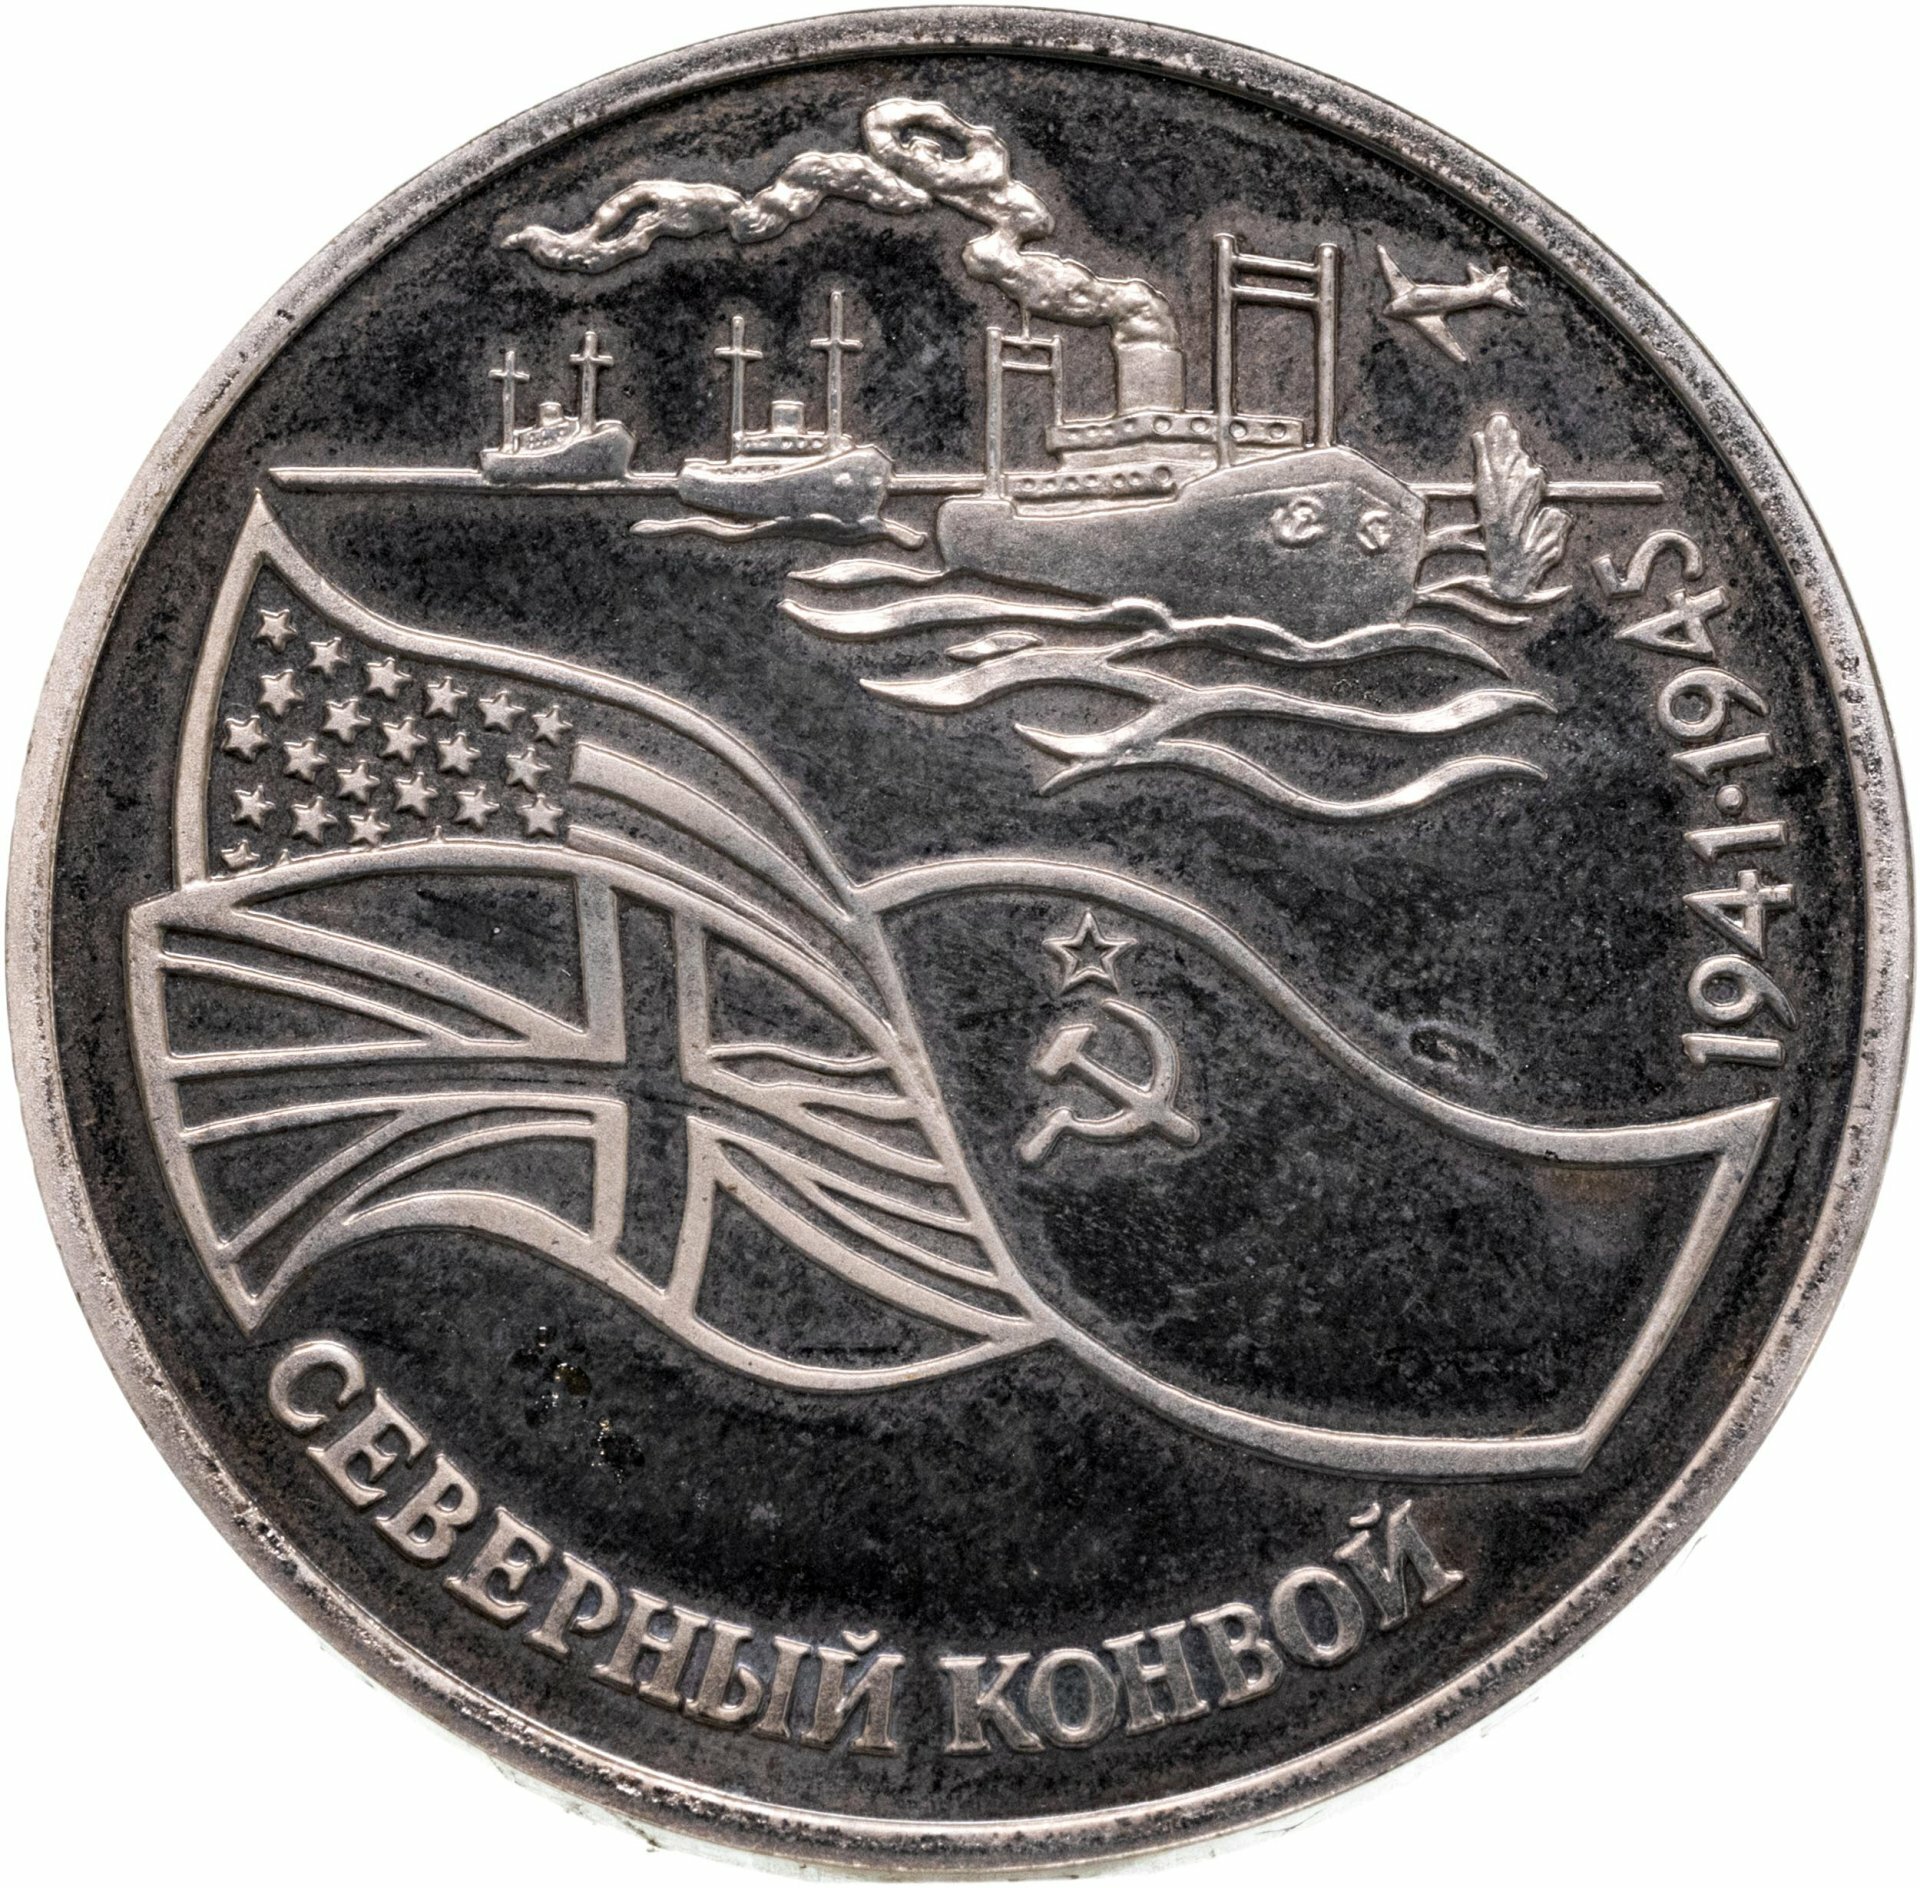 3 рубля 1992 ЛМД северный конвой